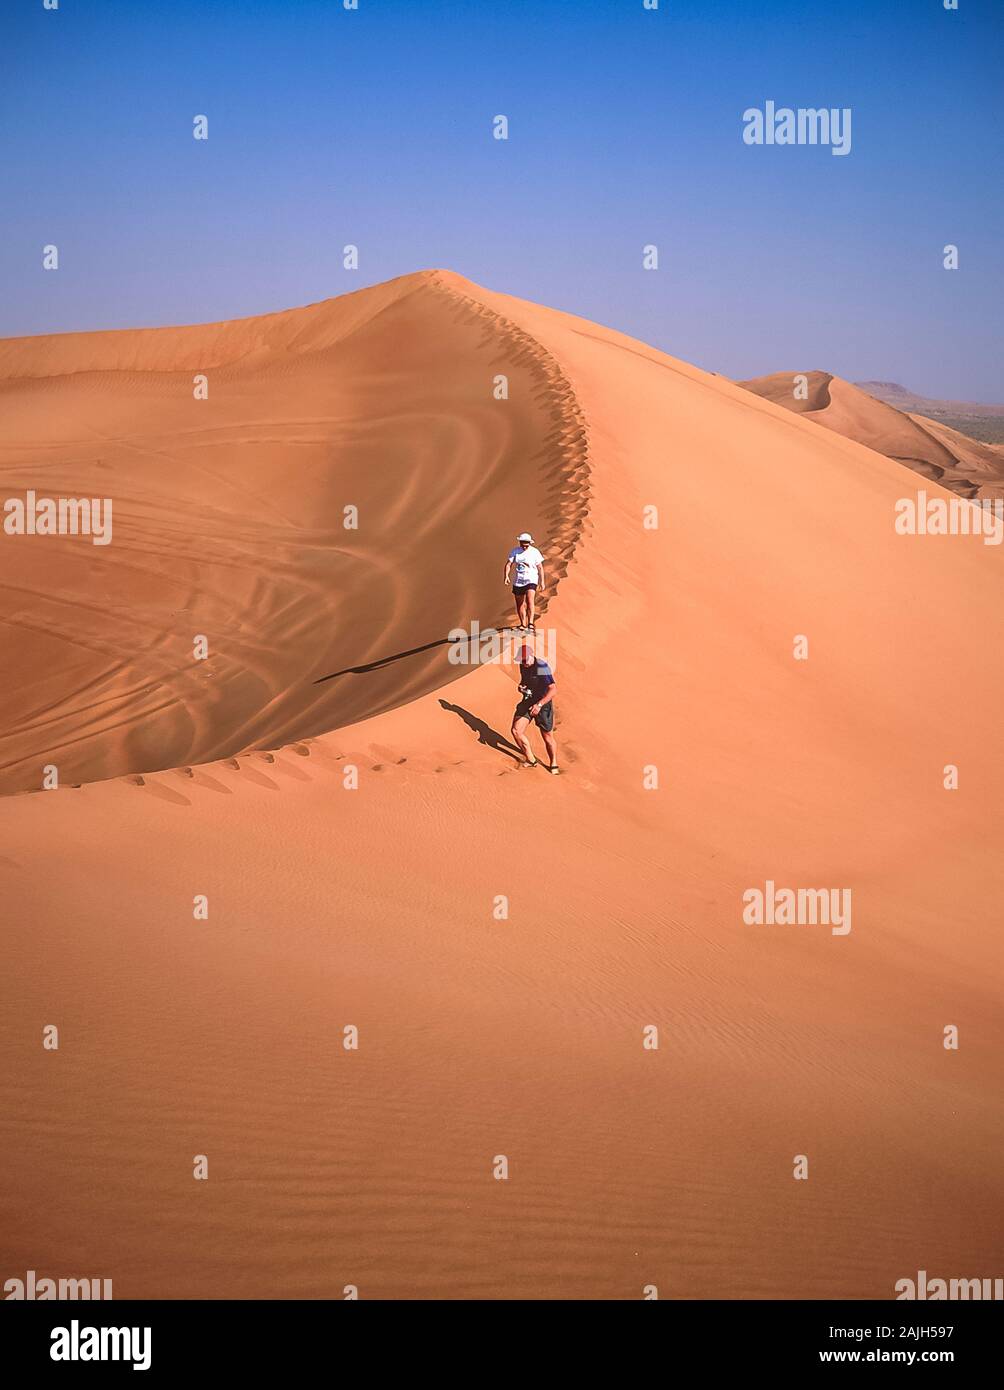 Dubaï. Les touristes européens apprécient le magnifique paysage désertique de dunes de sable naturelles et soufflées de vent près du village d'Al Dhid sur le bord de la route entre la ville de Dubaï et la forteresse rurale oasis ville de Hatta Banque D'Images